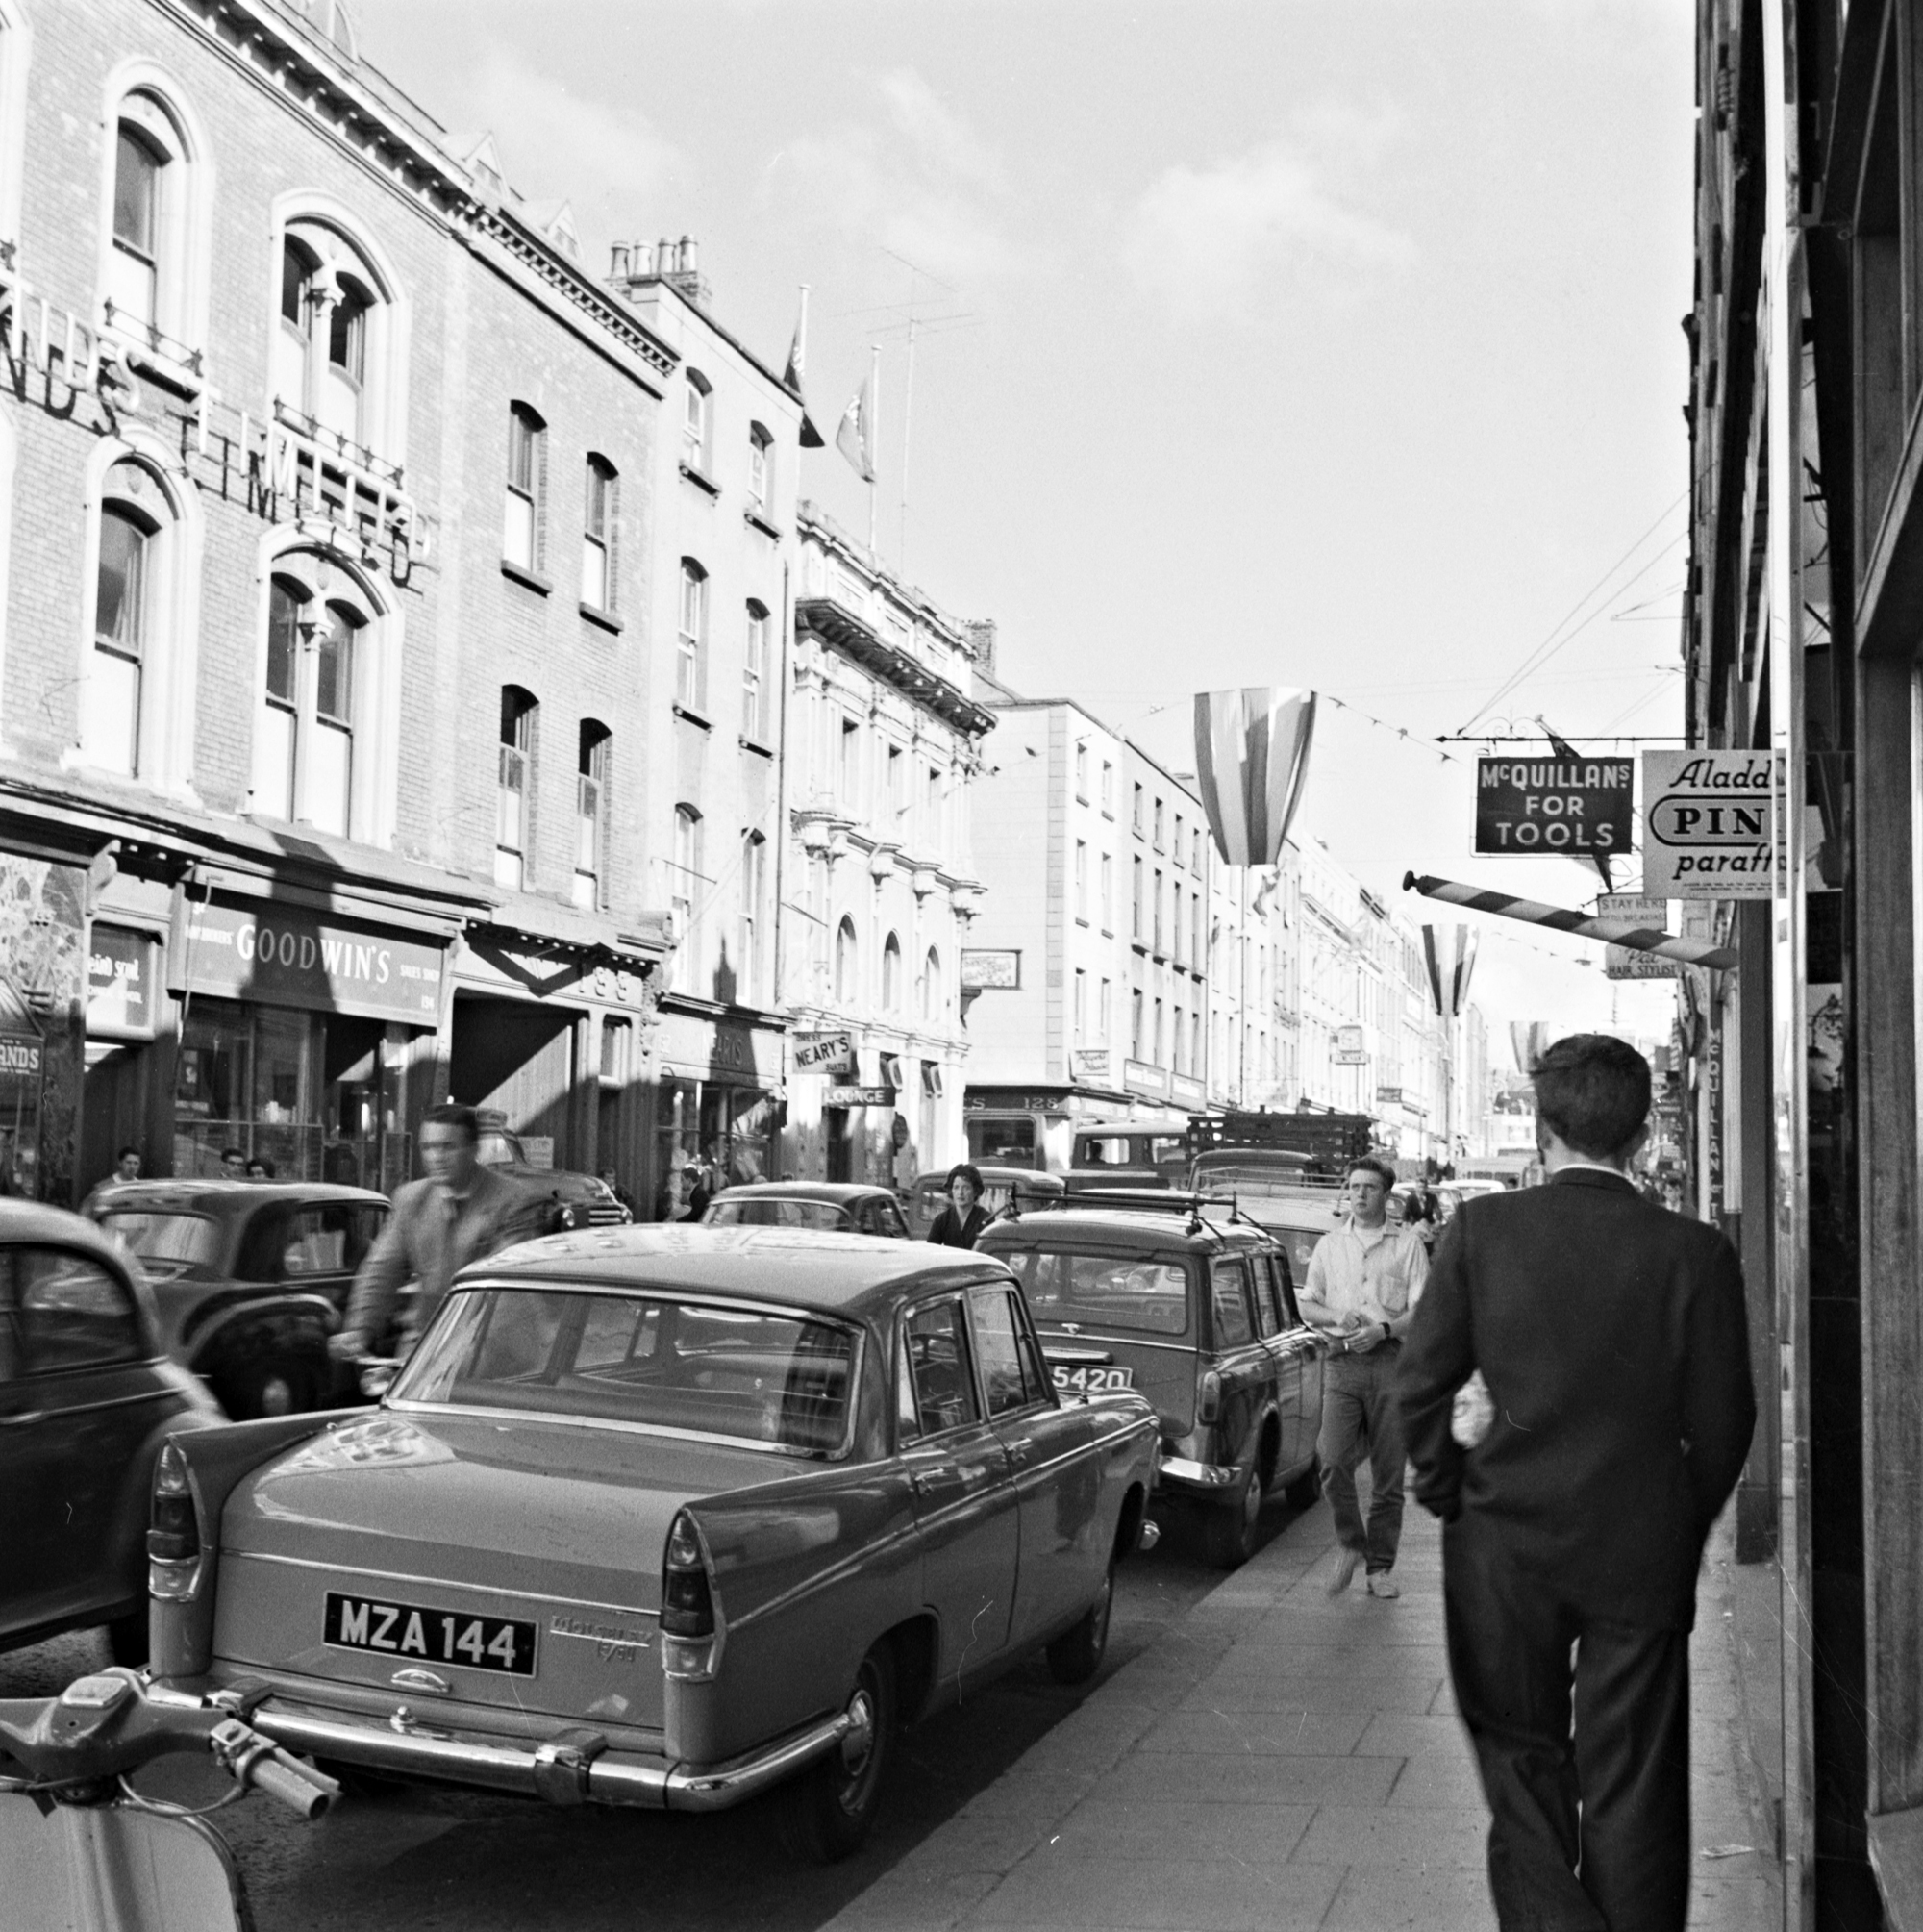 Ireland 1960s, Capel Street, Dublin at 9.30 am Date: Tuesday, 28 June 1960